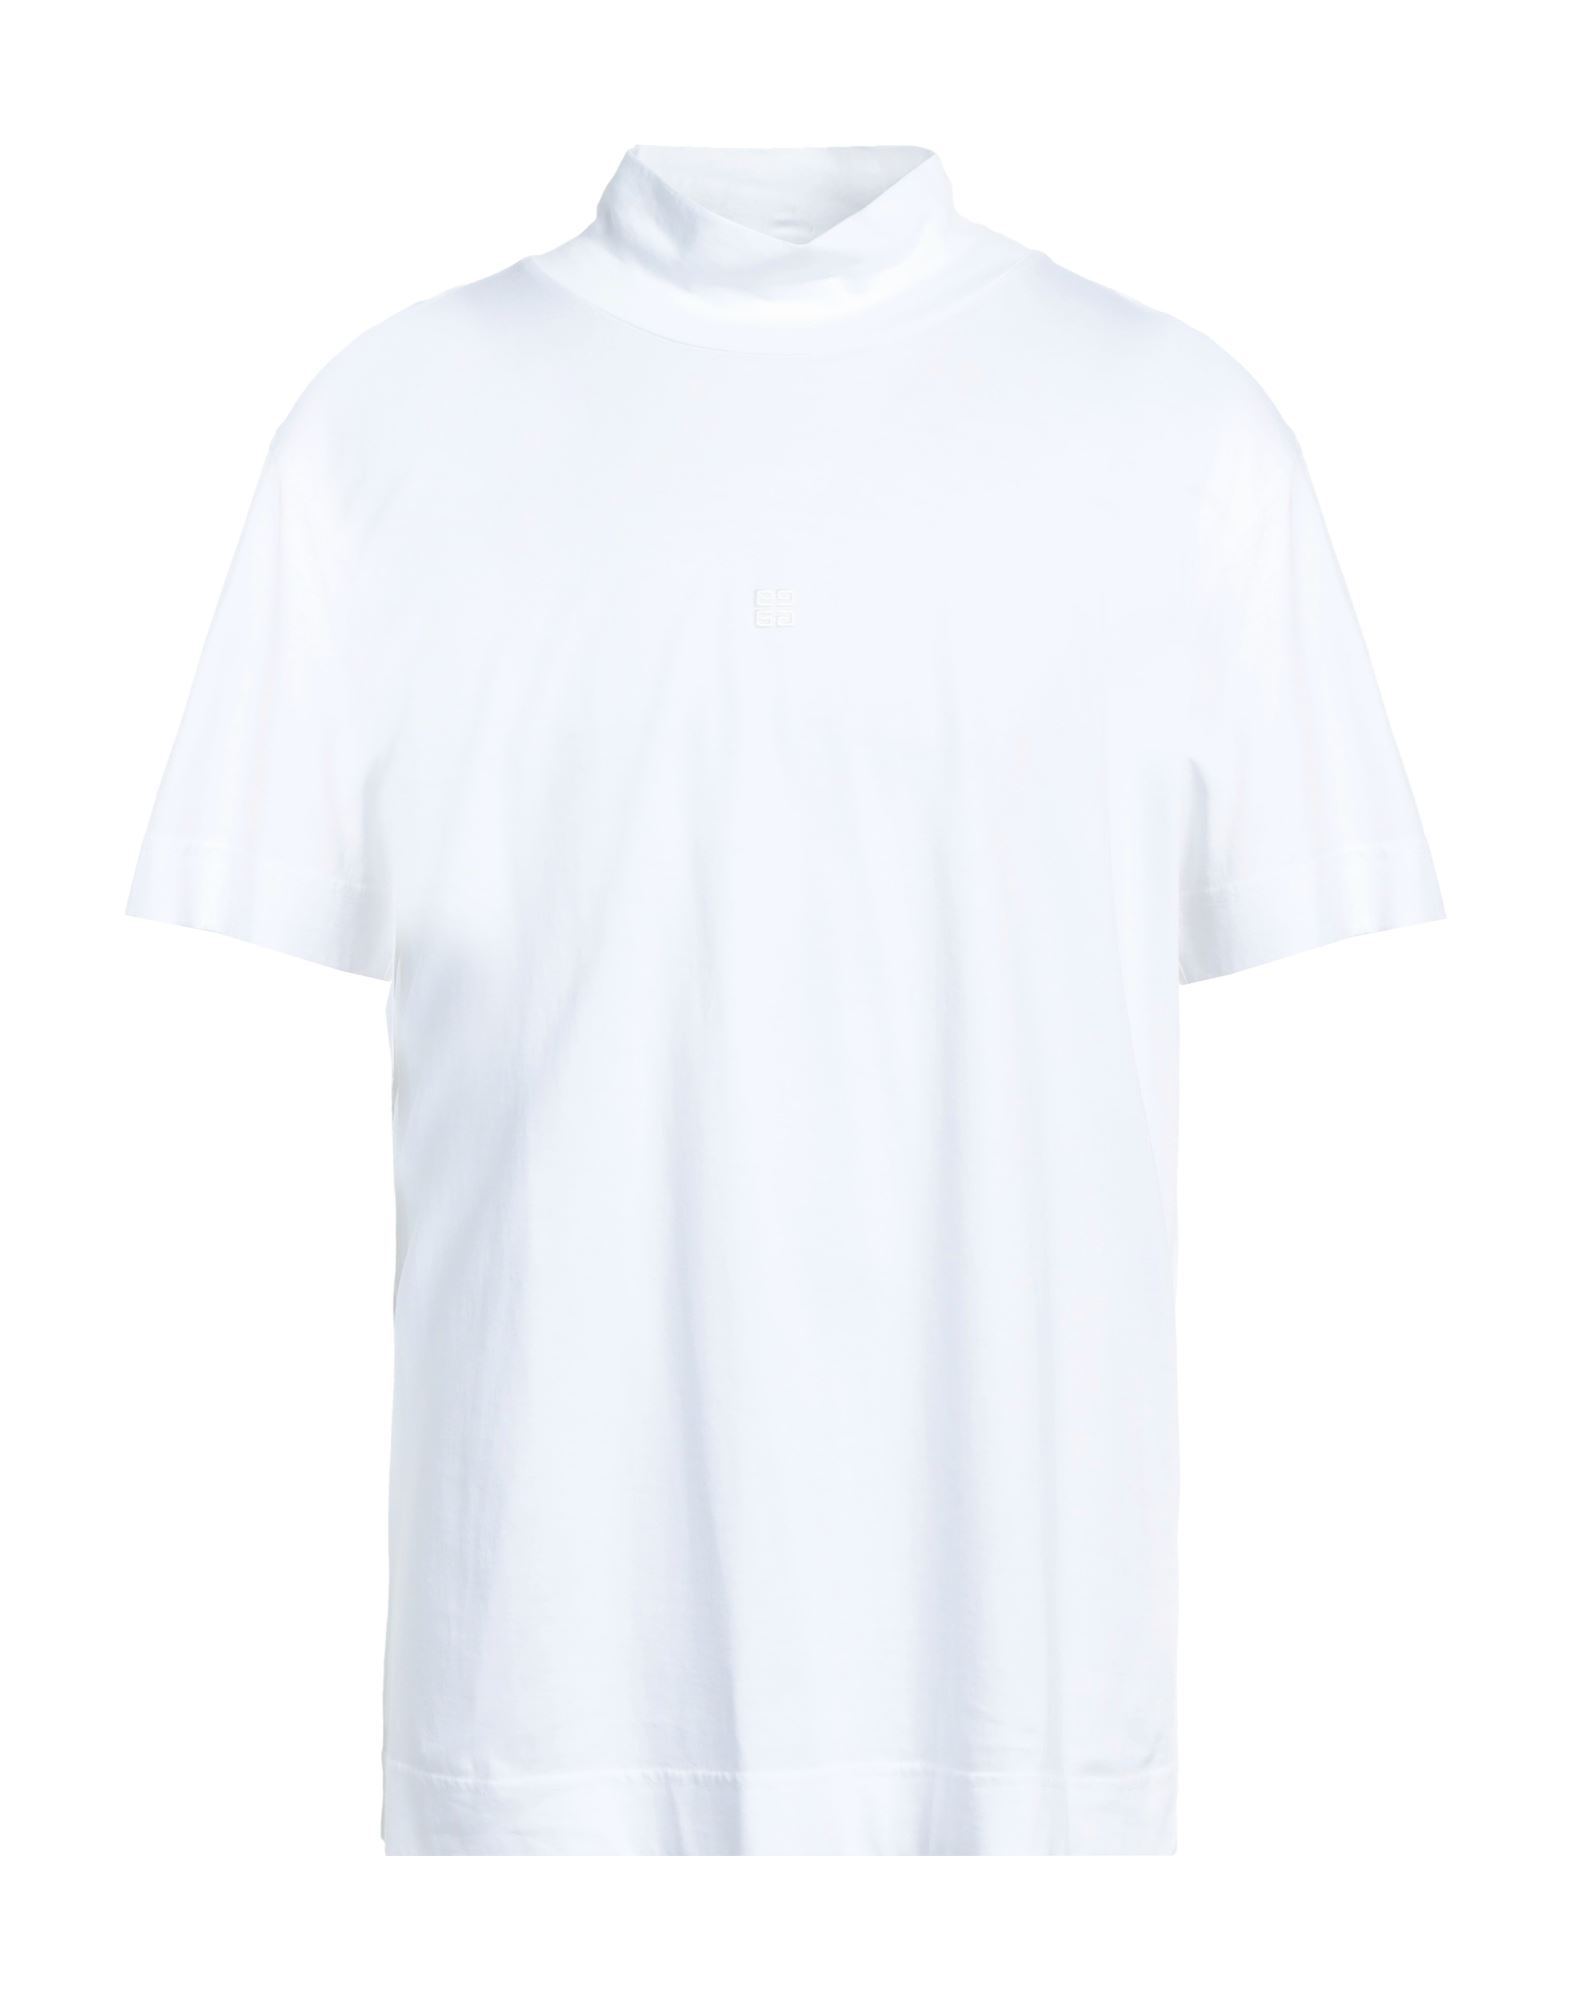 GIVENCHY T-shirts Herren Weiß von GIVENCHY